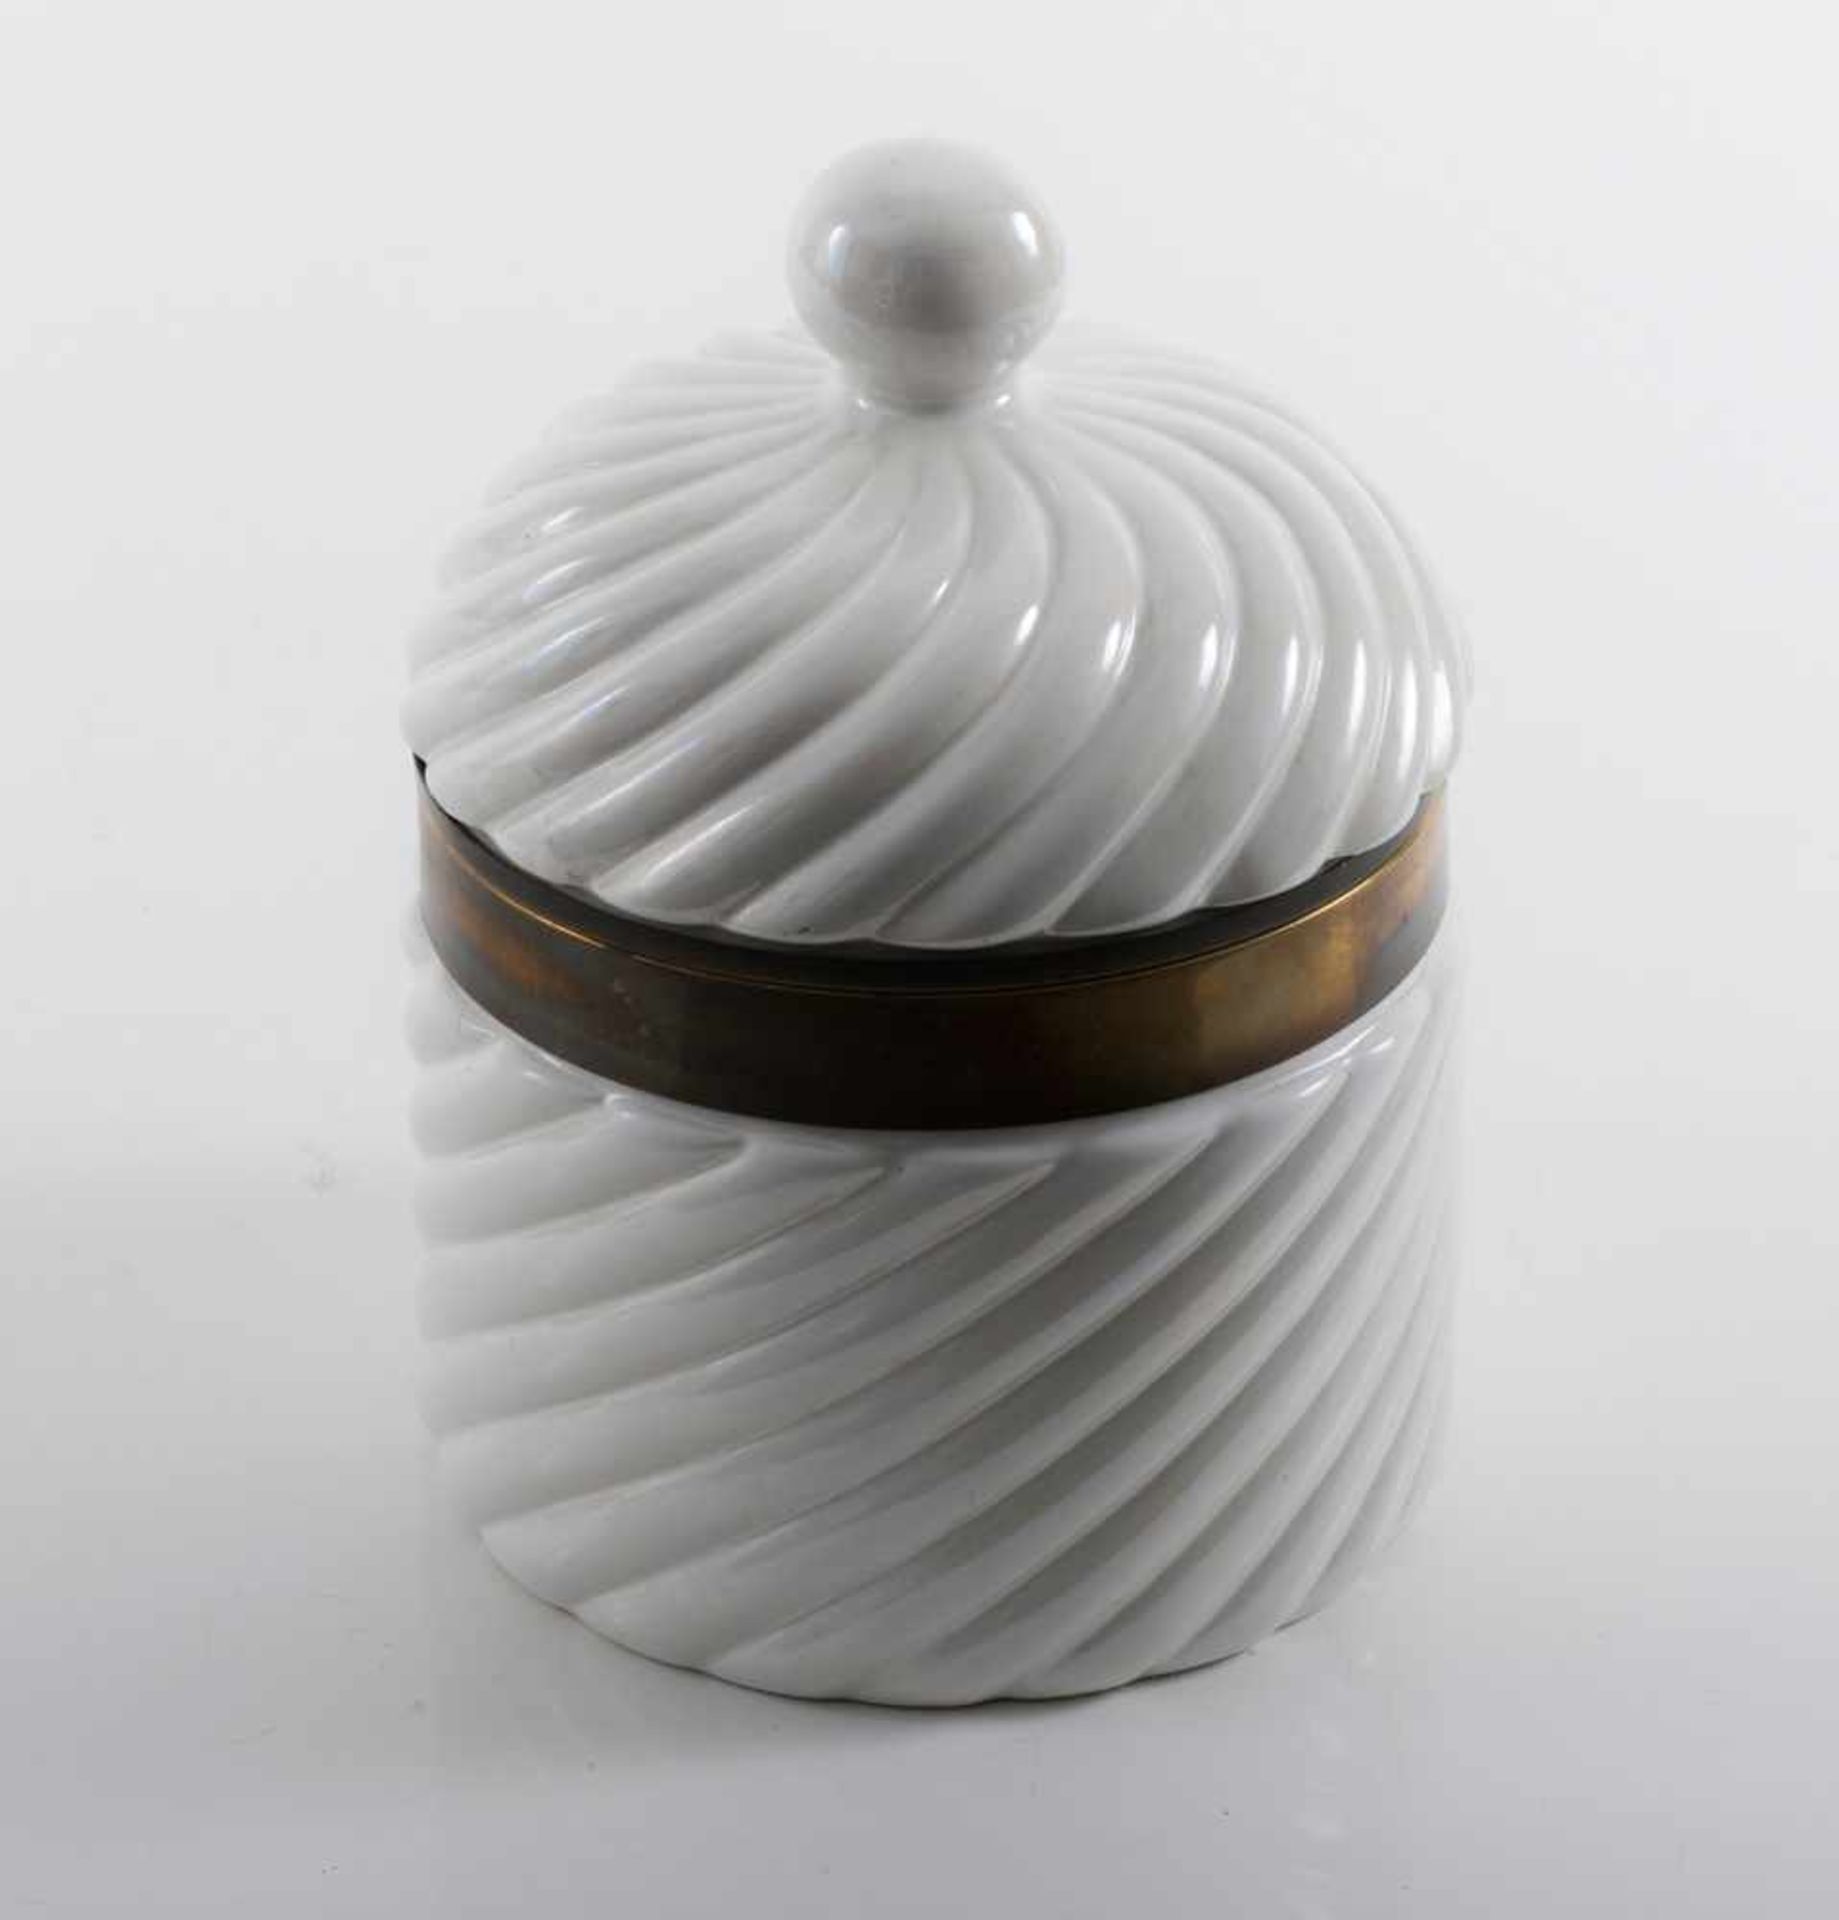 Tommaso Barbi Eiskübel, um 1965 H. 35,5 cm, Dm. 25 cm. tb ceramiche, Italien. Steingut, weiß - Bild 2 aus 2